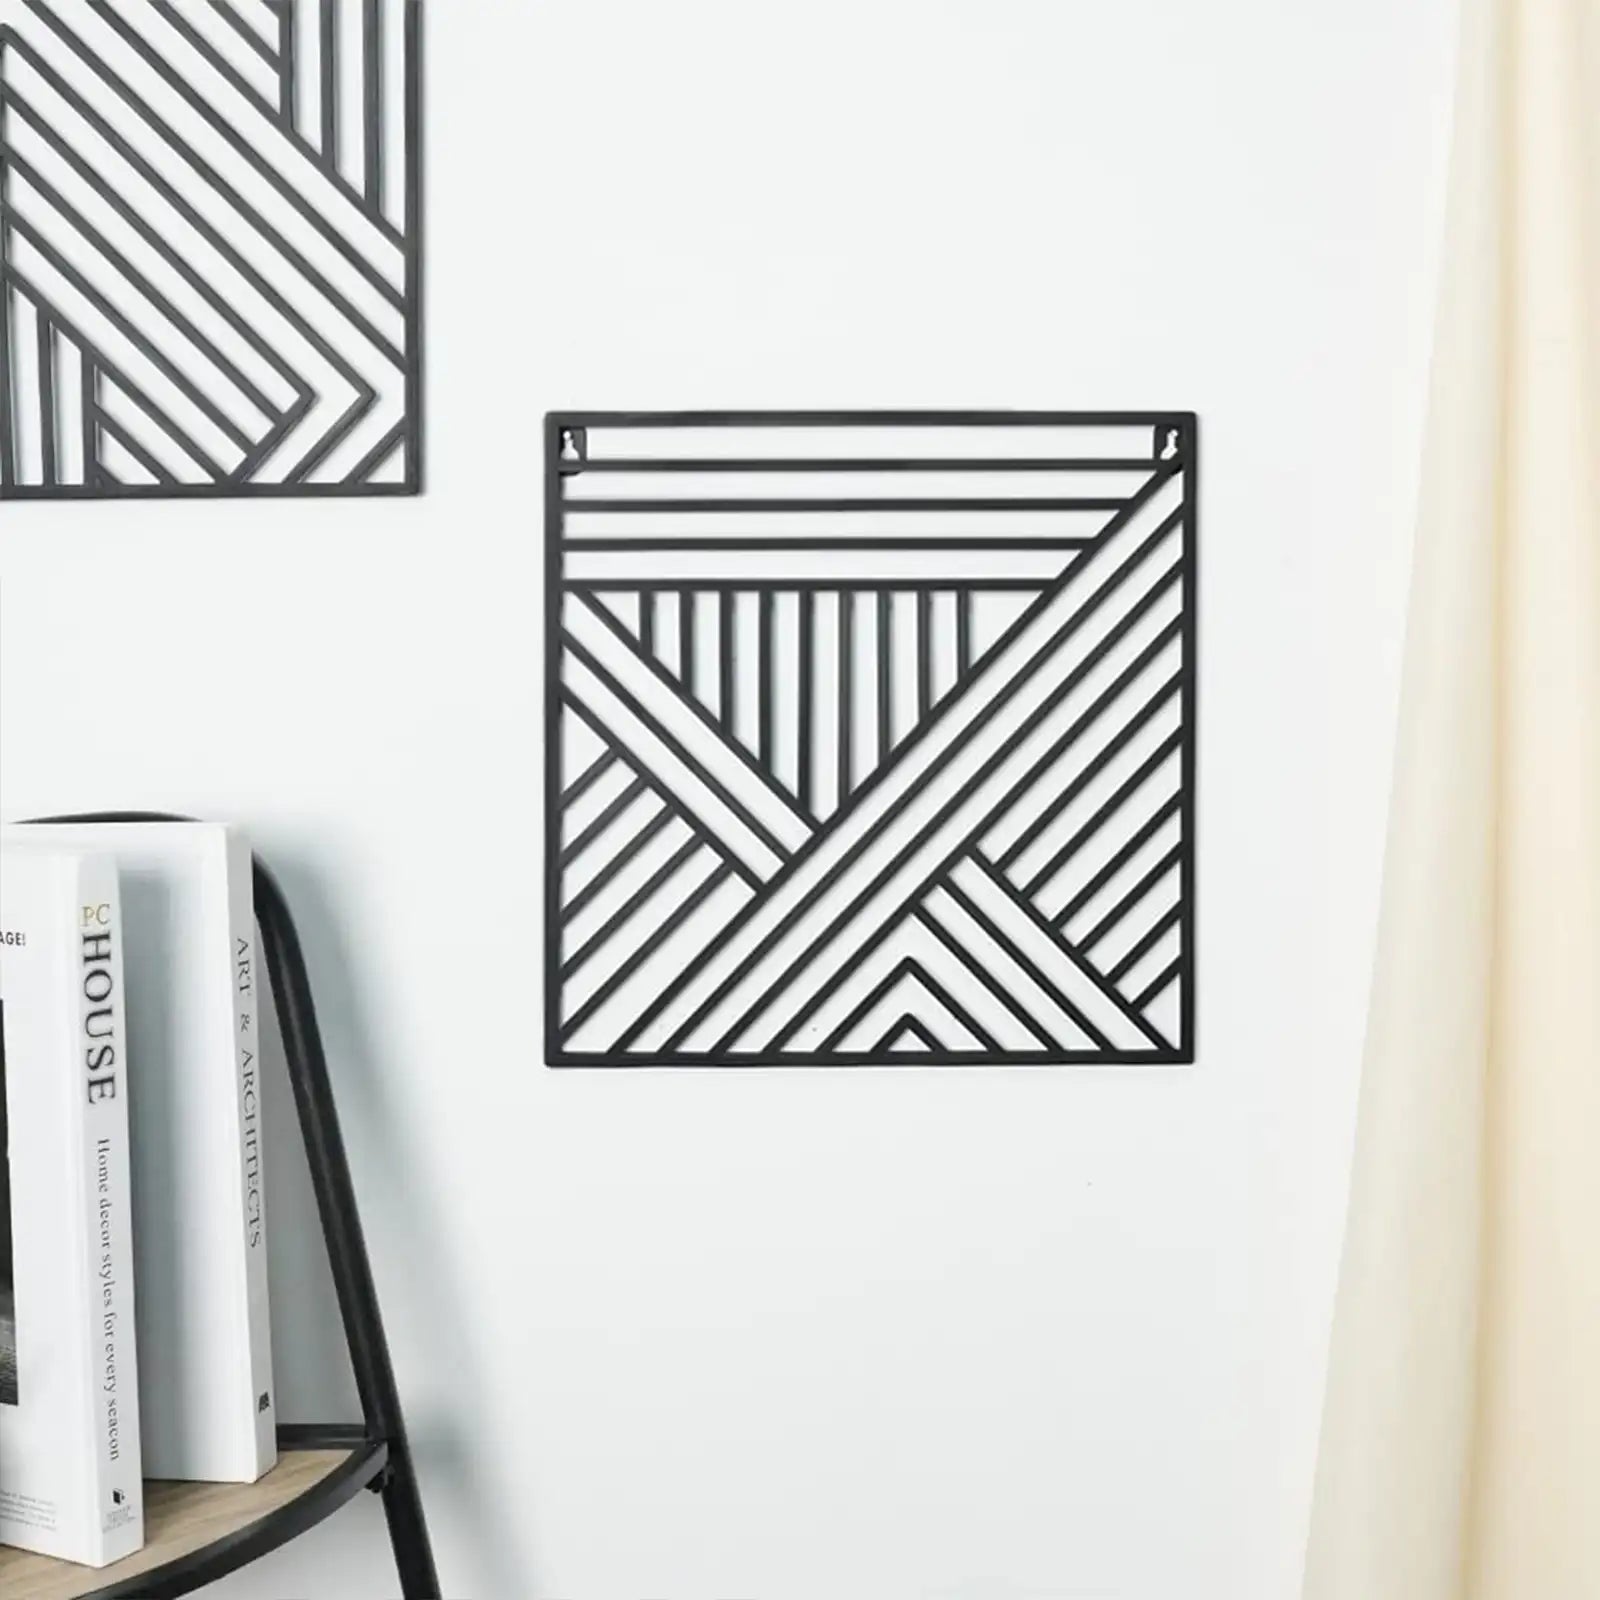 Juego de 2 arte de pared de metal con línea geométrica negra, decoración colgante cuadrada minimalista, escultura de pared colgante moderna sobre la cama, 11,8x11,8 pulgadas 